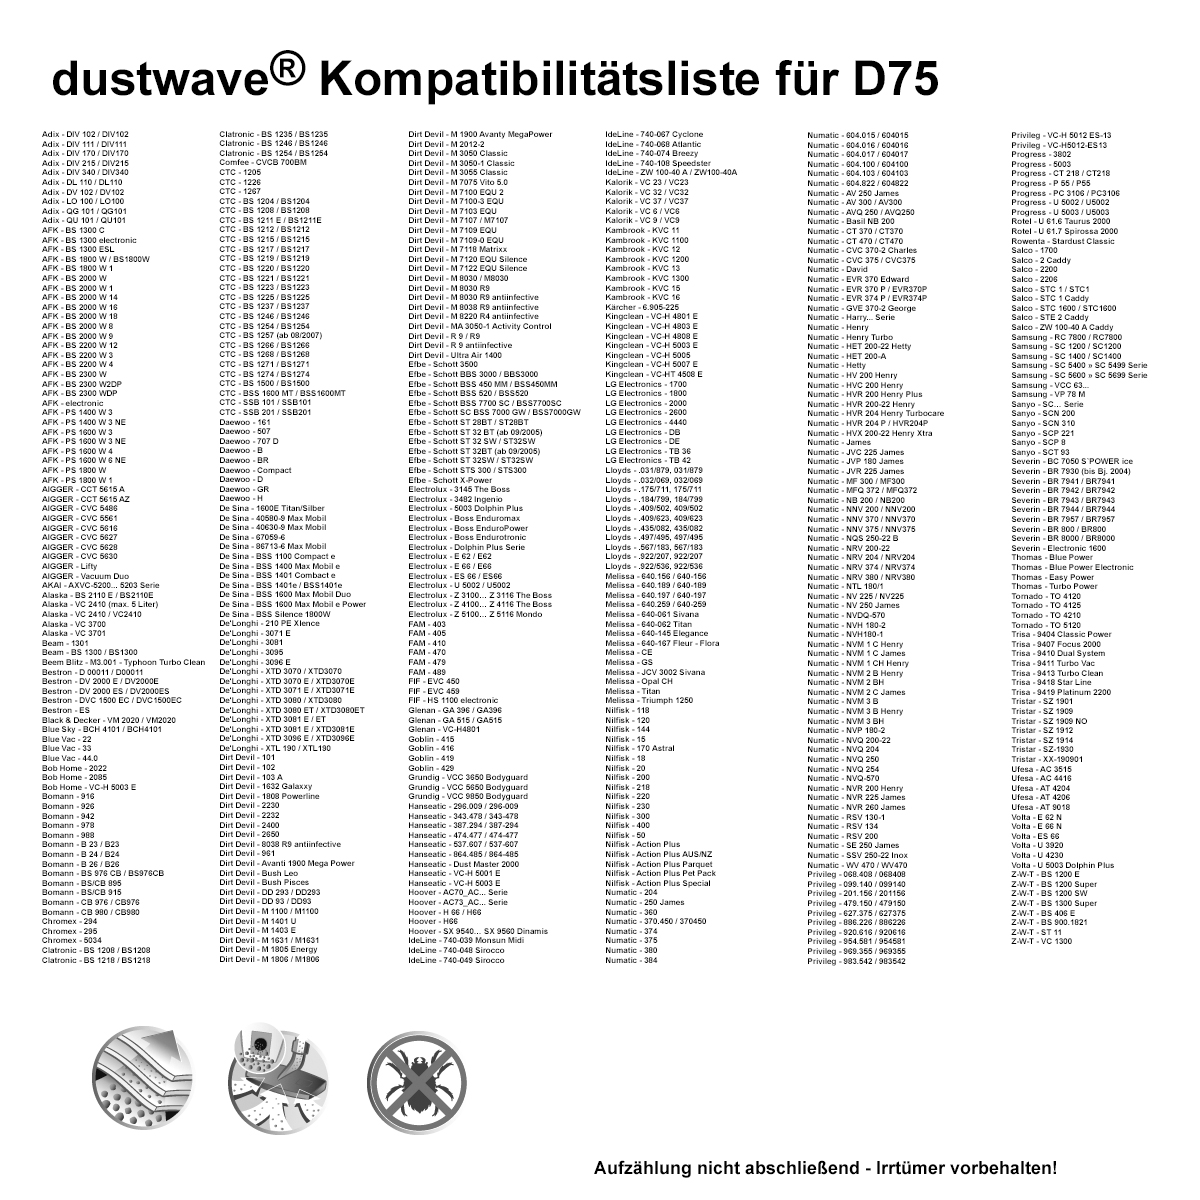 Dustwave® 1 Staubsaugerbeutel für Alaska VC 2410 / VC2410 - hocheffizient mit Hygieneverschluss - Made in Germany